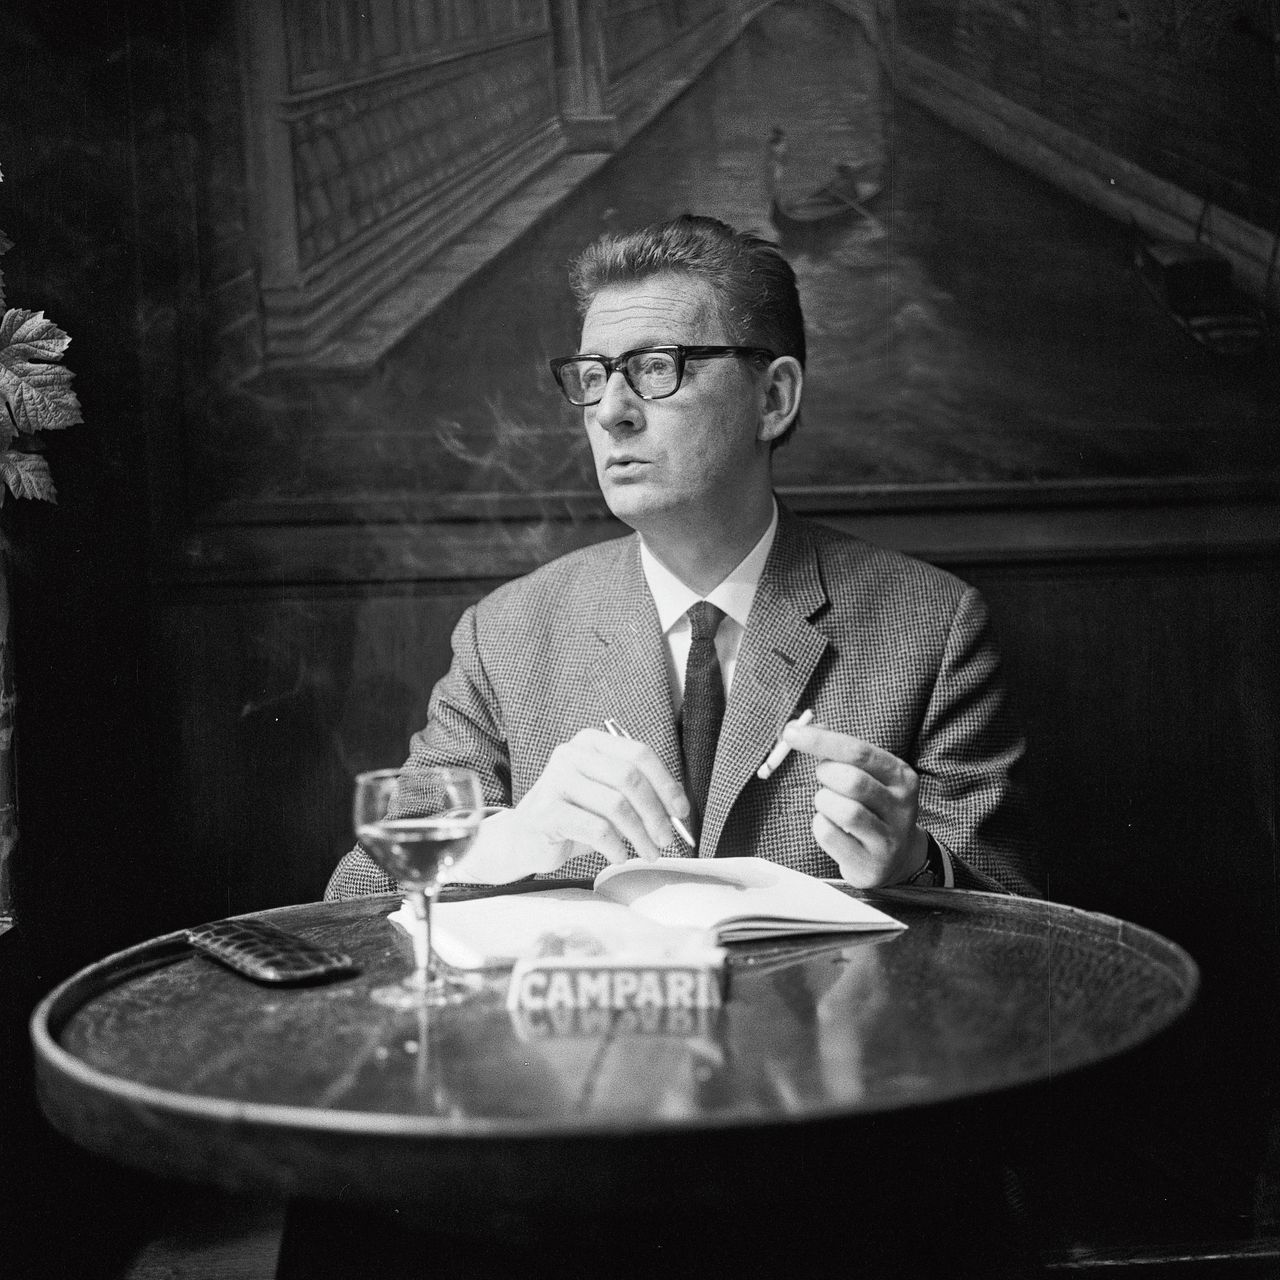 Schrijver en columnist Simon Carmiggelt in de jaren zestig.